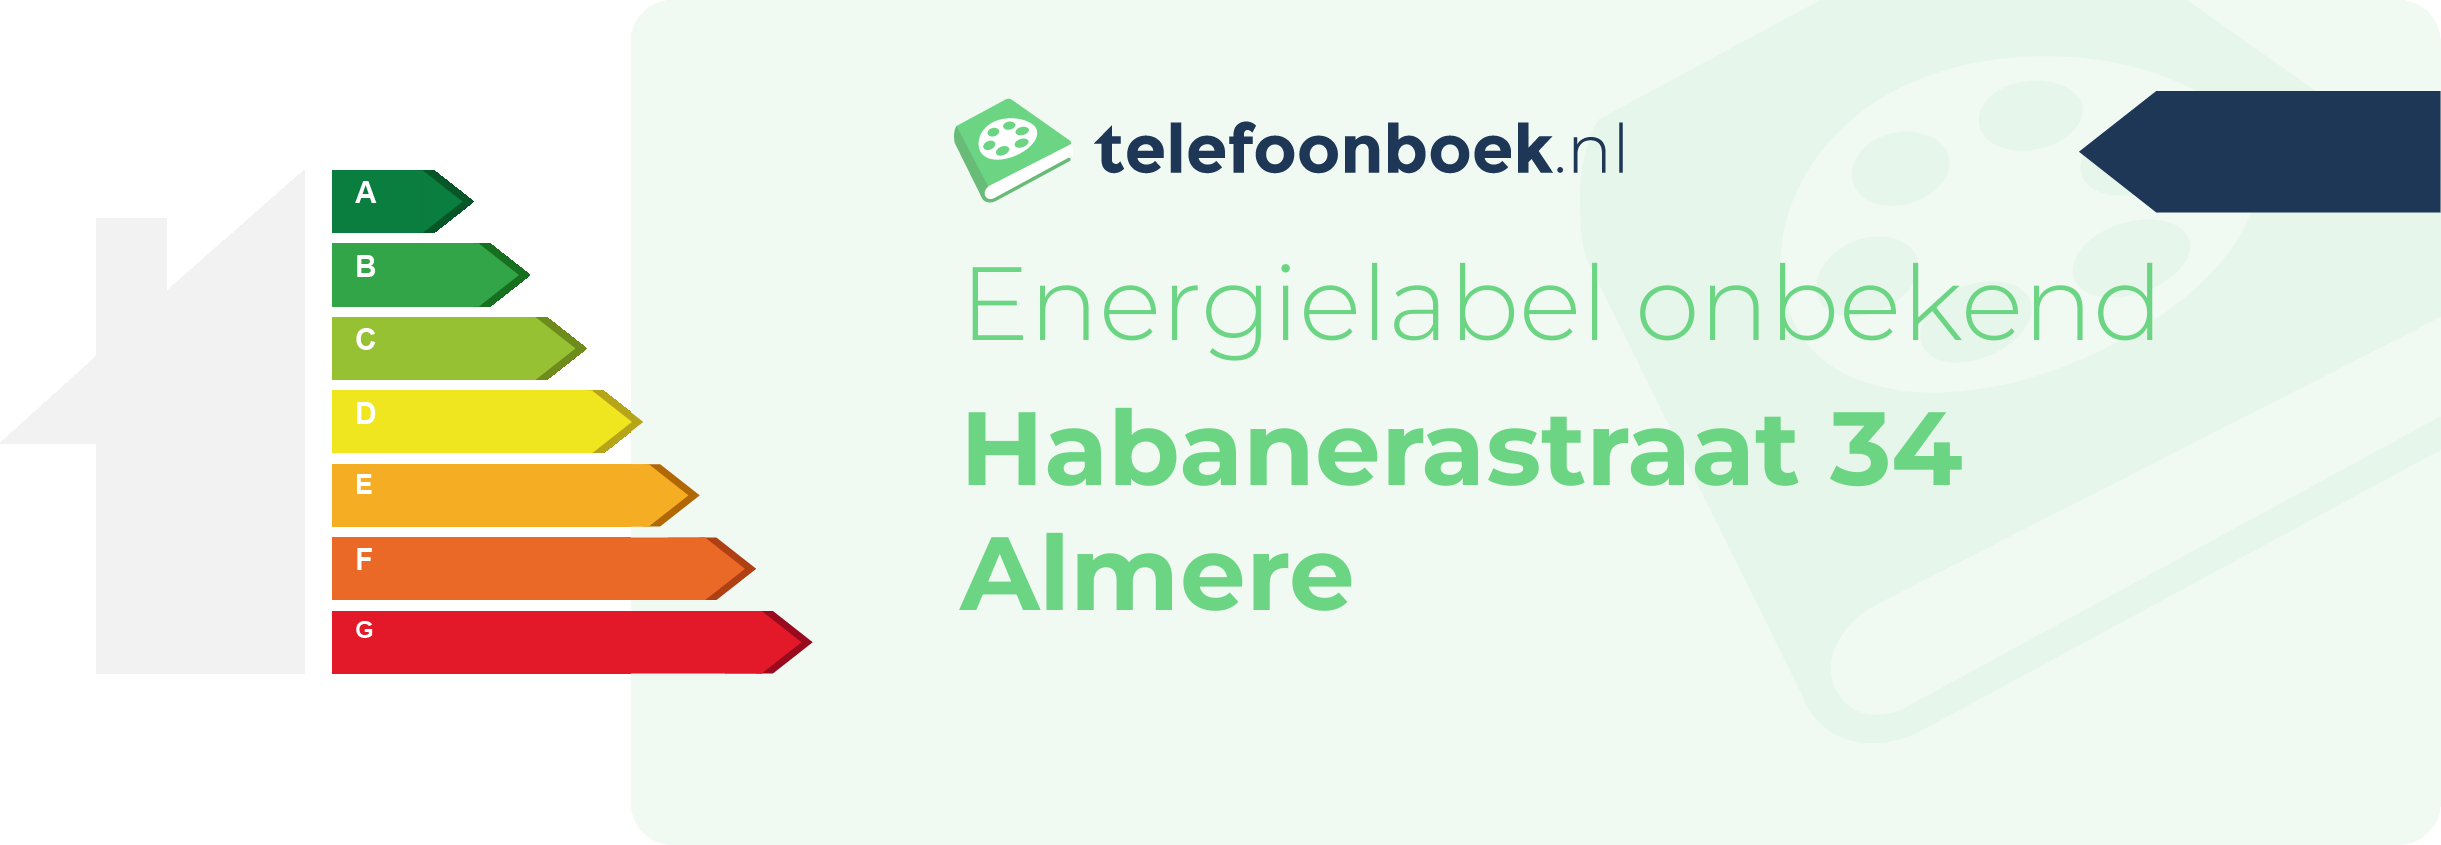 Energielabel Habanerastraat 34 Almere